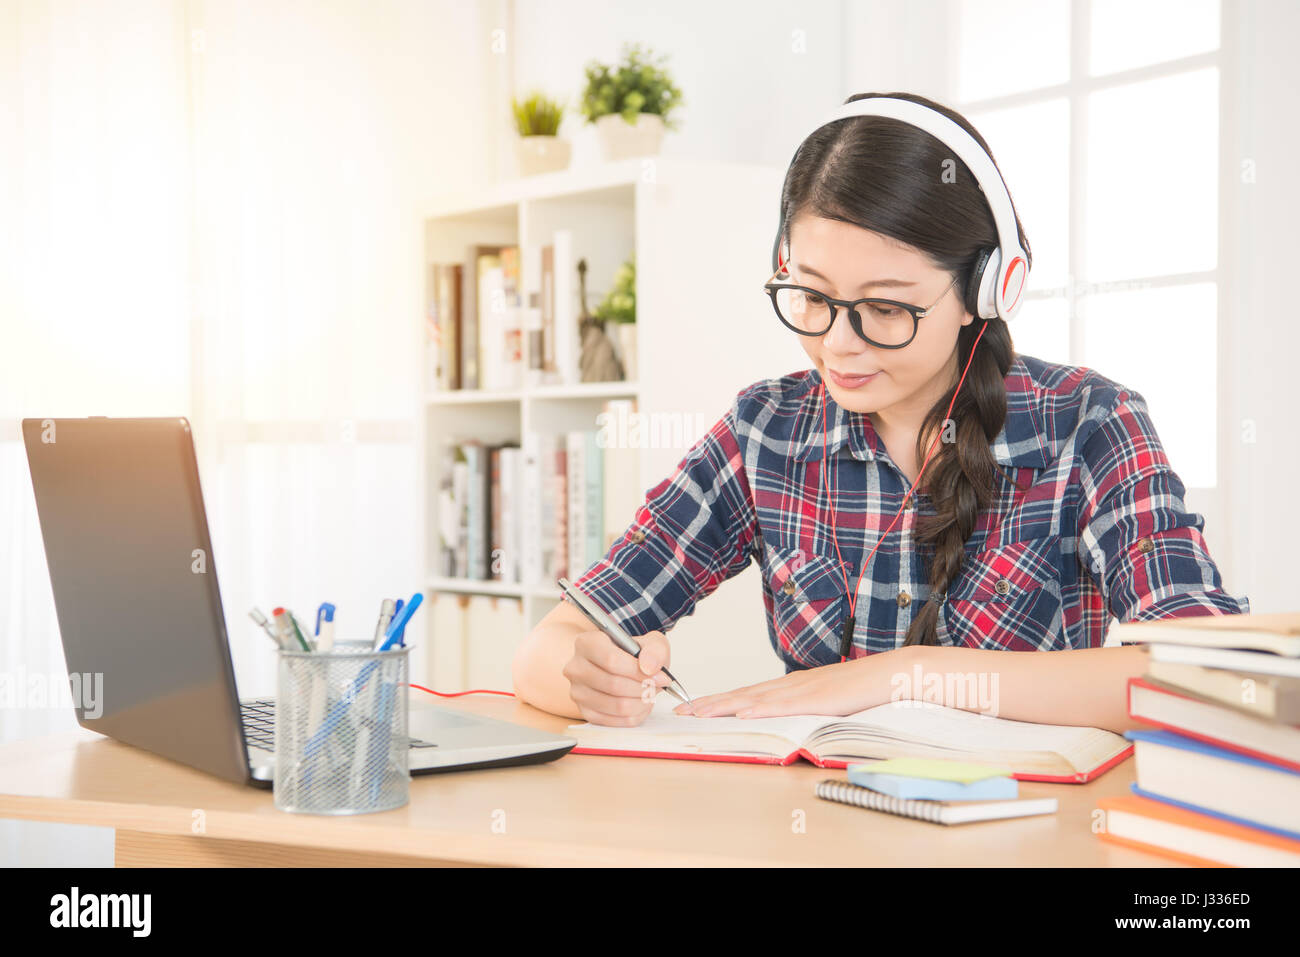 Porträt eines Schülers auf Linie mit Kopfhörer und Laptop Notizen in einem Notizbuch sitzt an ihrem Schreibtisch zu Hause lernen. Gemischte Rassen asiatische chinesische mod Stockfoto